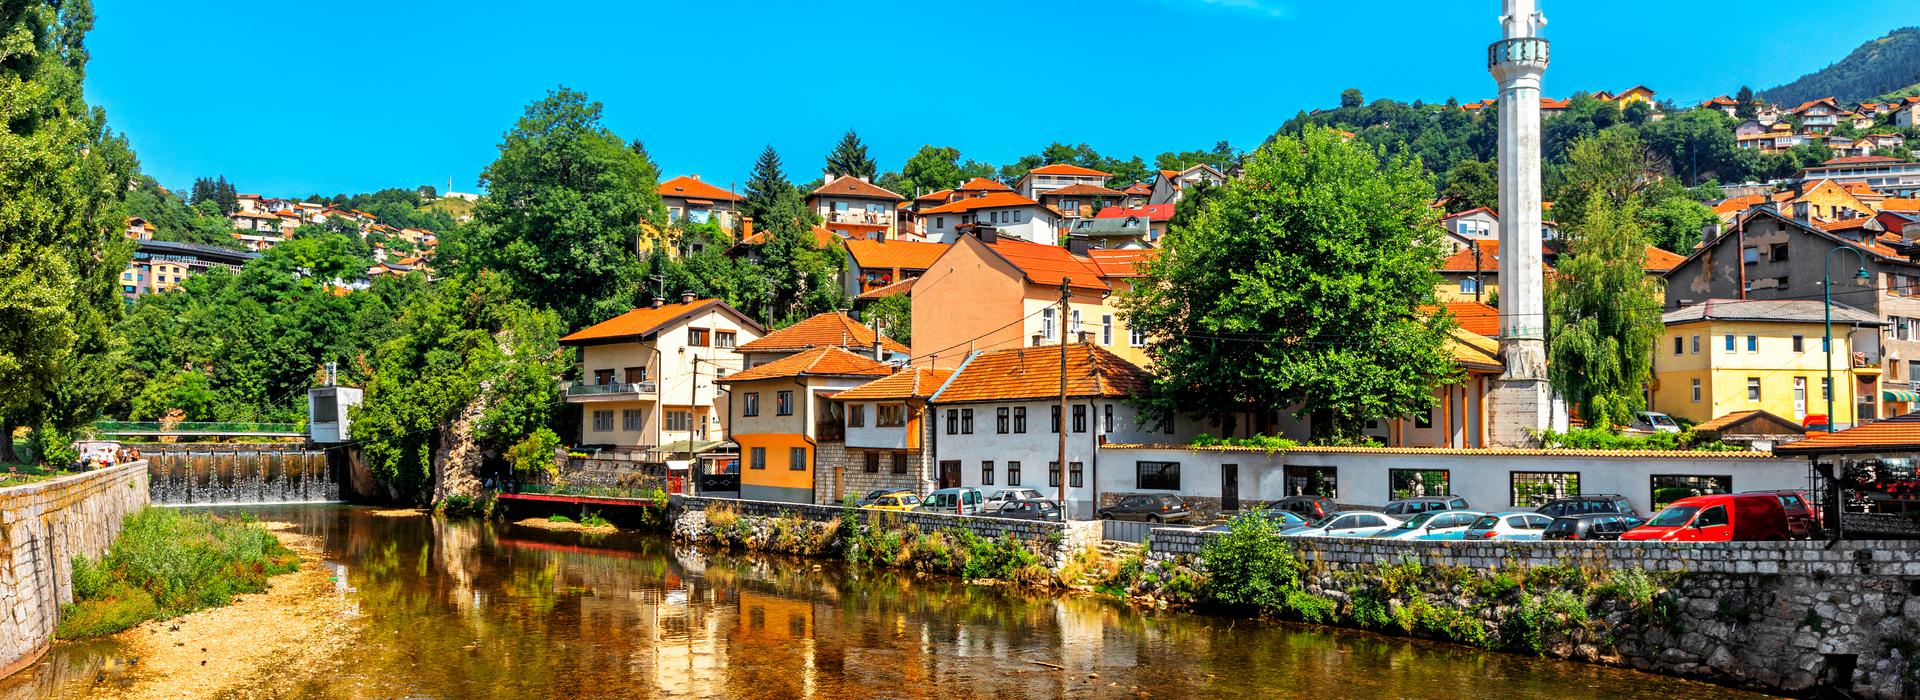 Sarajevo, Bosnien und Herzegowina, Europa